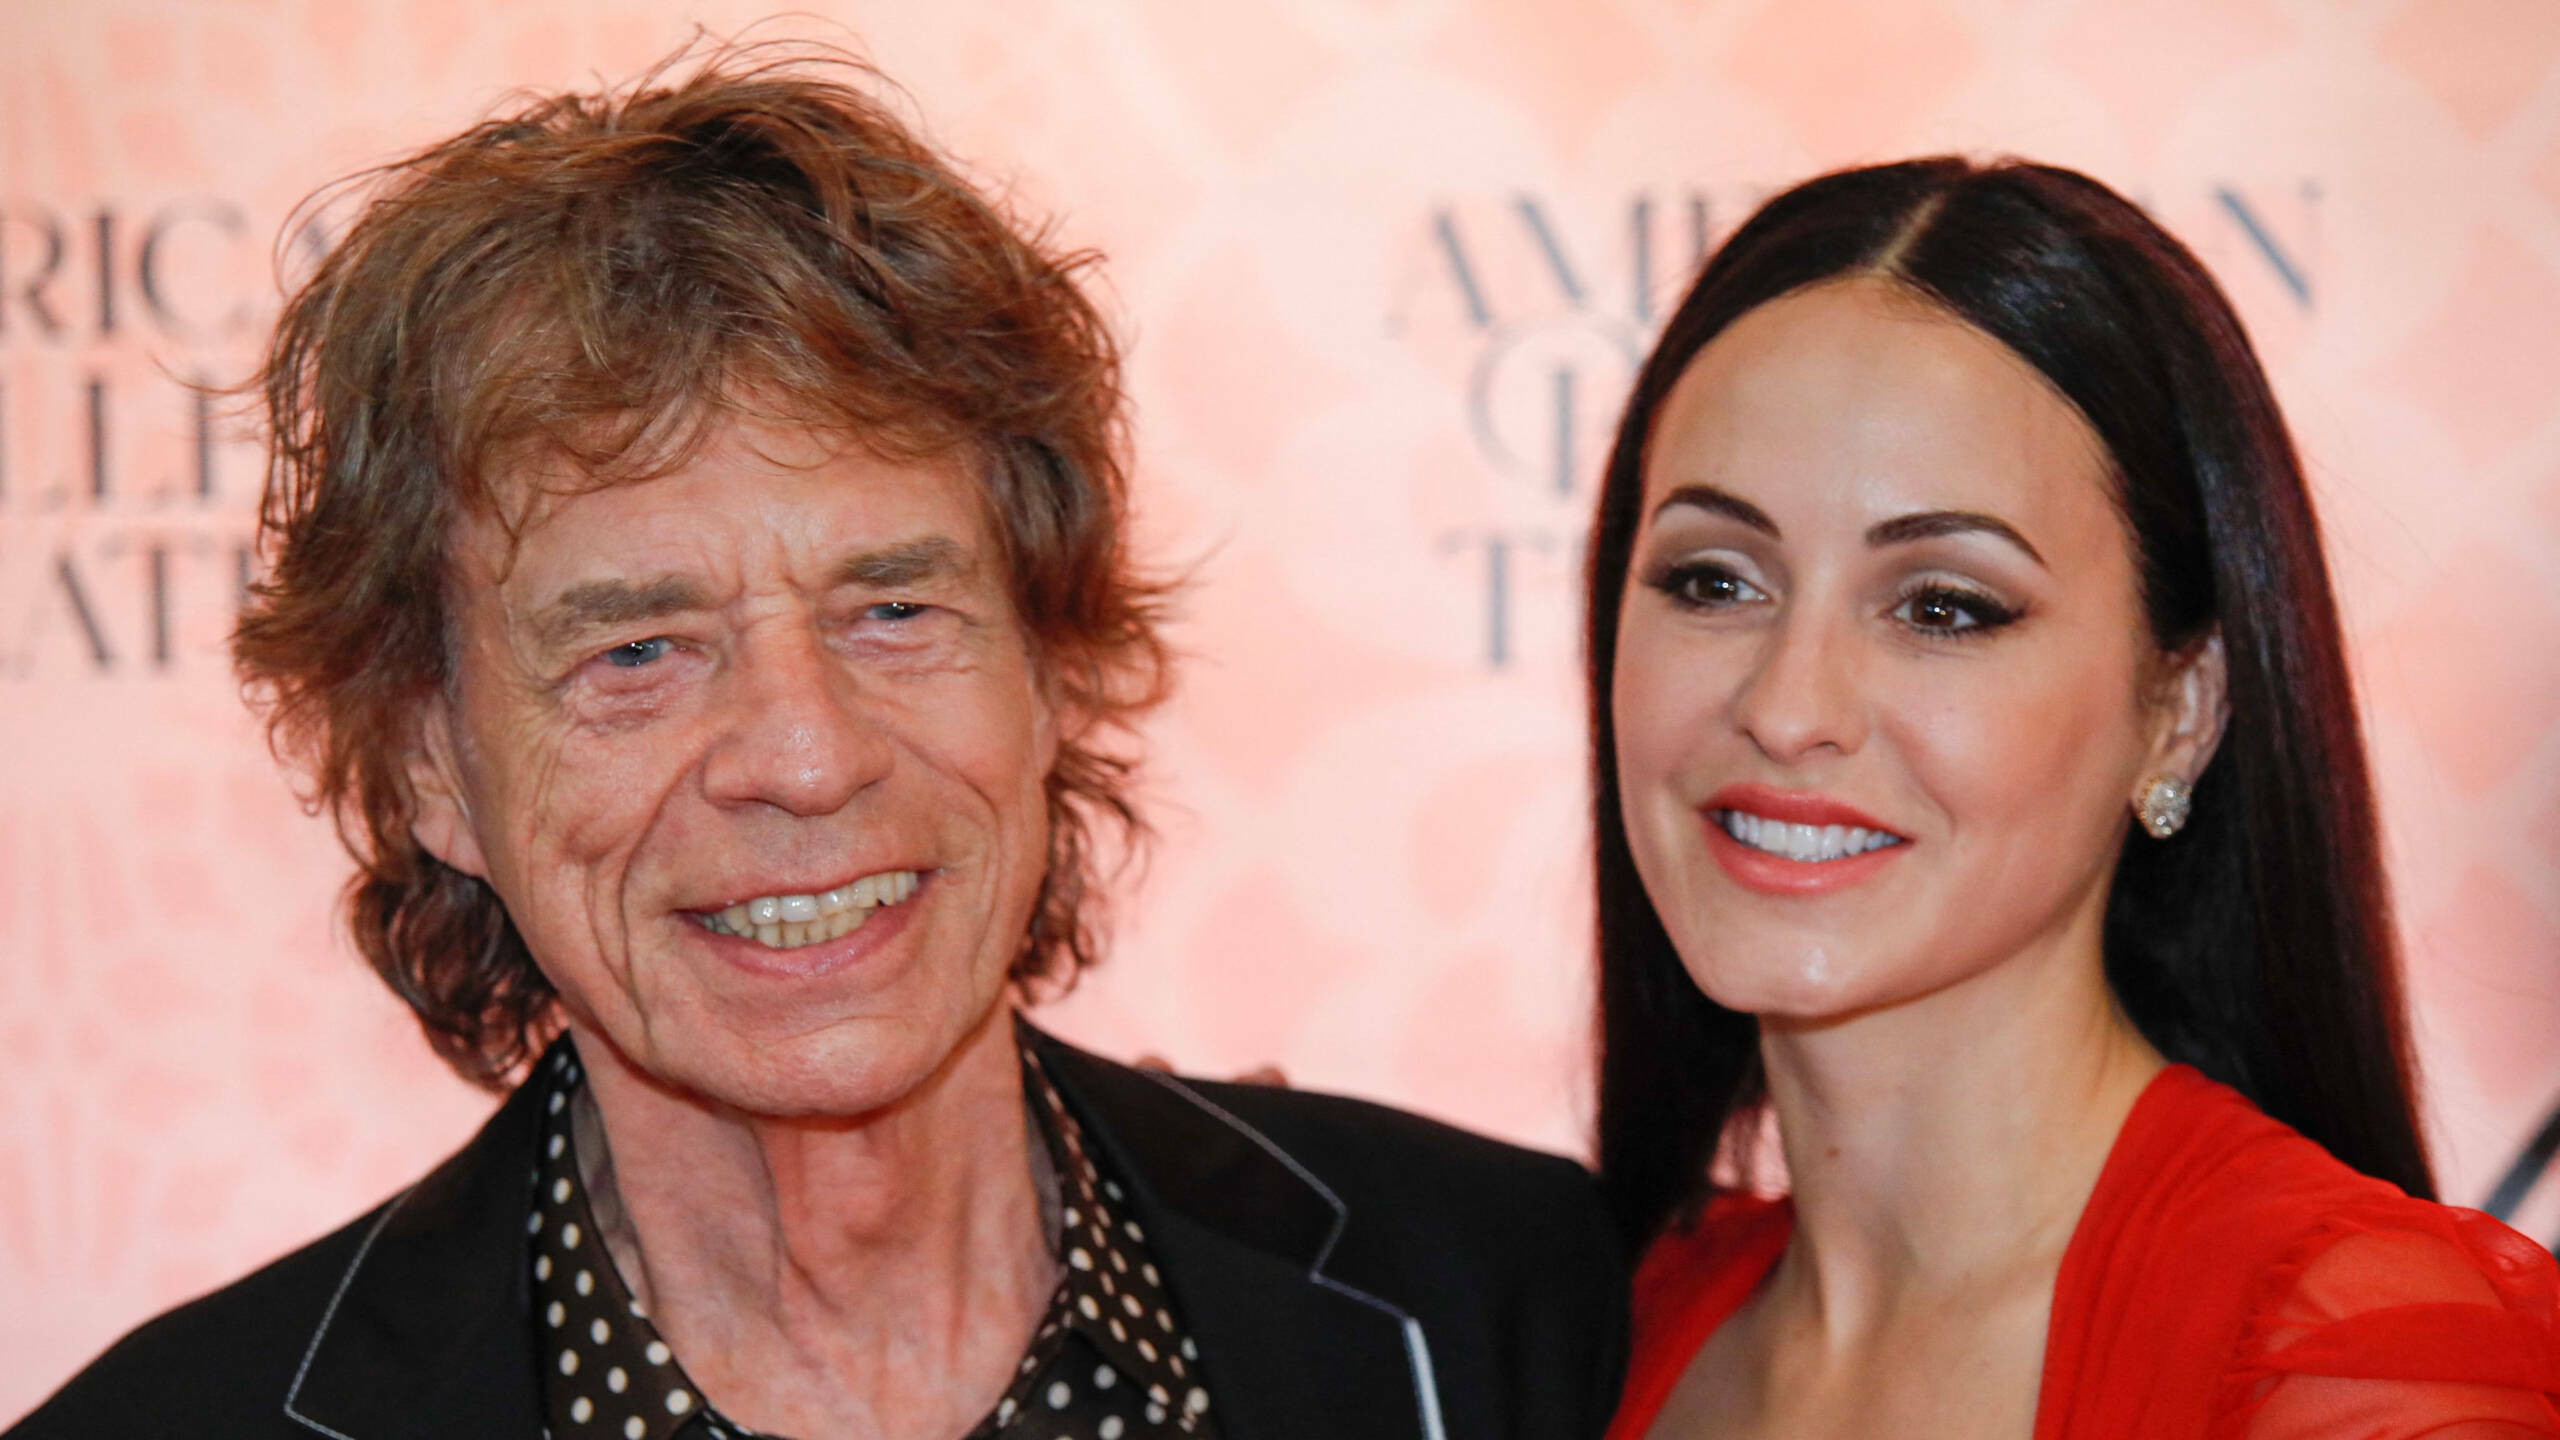 Mick Jagger und seine Verlobte Melanie Hamrick bei einem der seltenen öffentlichen Auftritte (hier bei einer Aufführung des American Ballet Theatres in New York)